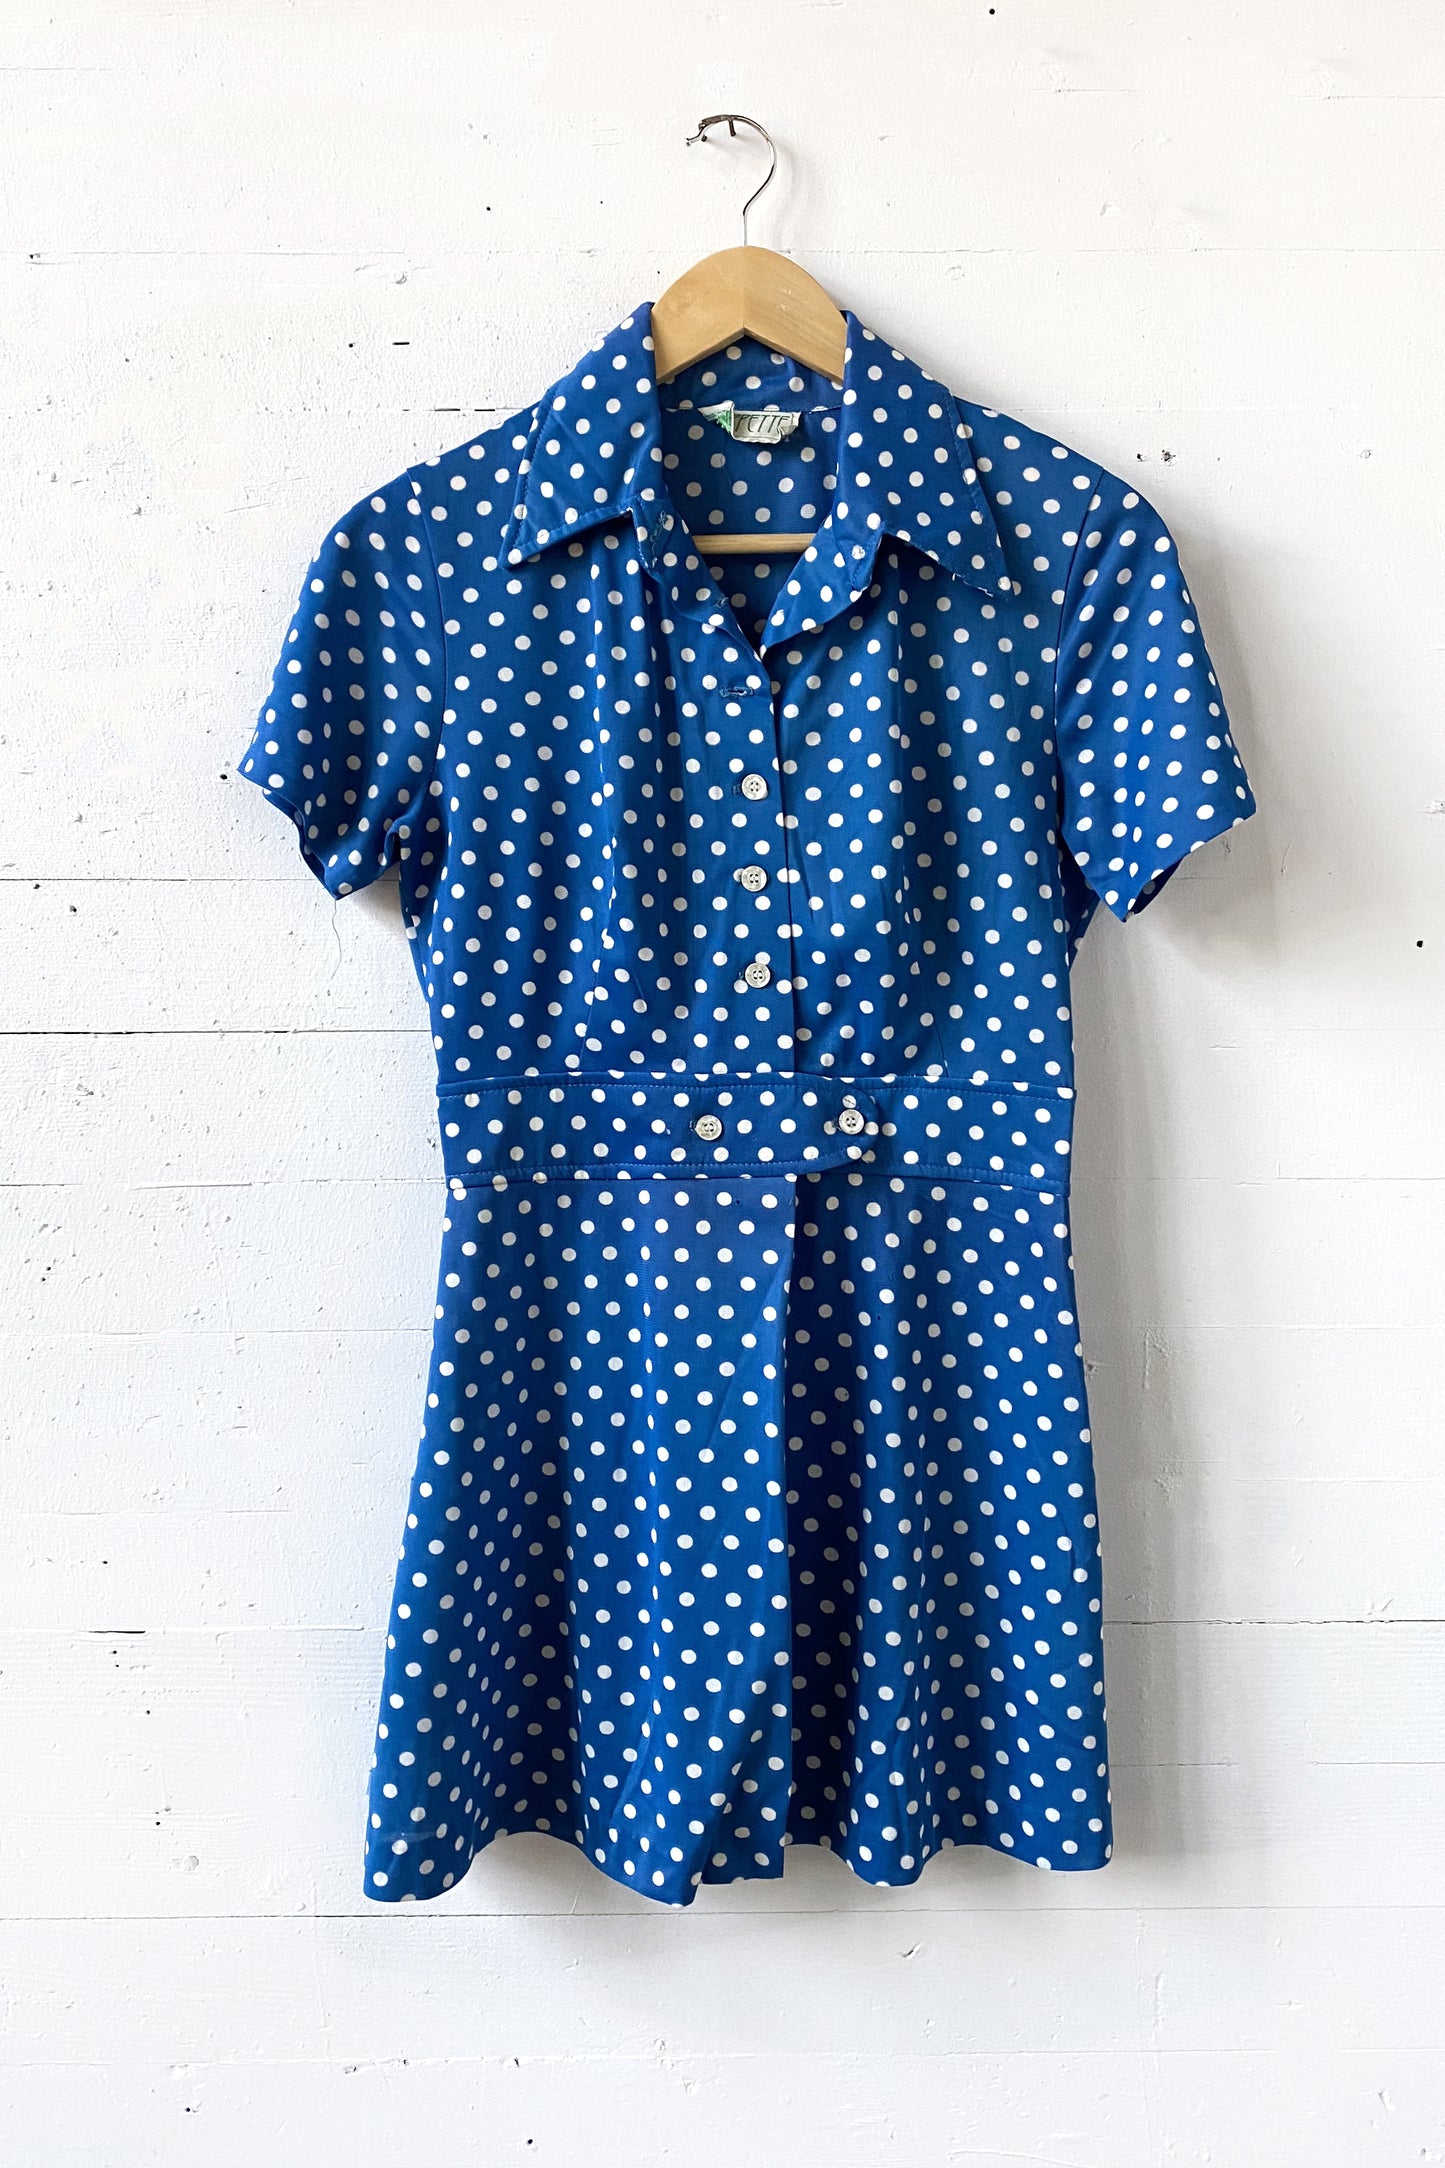 Vintage Wippette Blue Polka Dot Dress